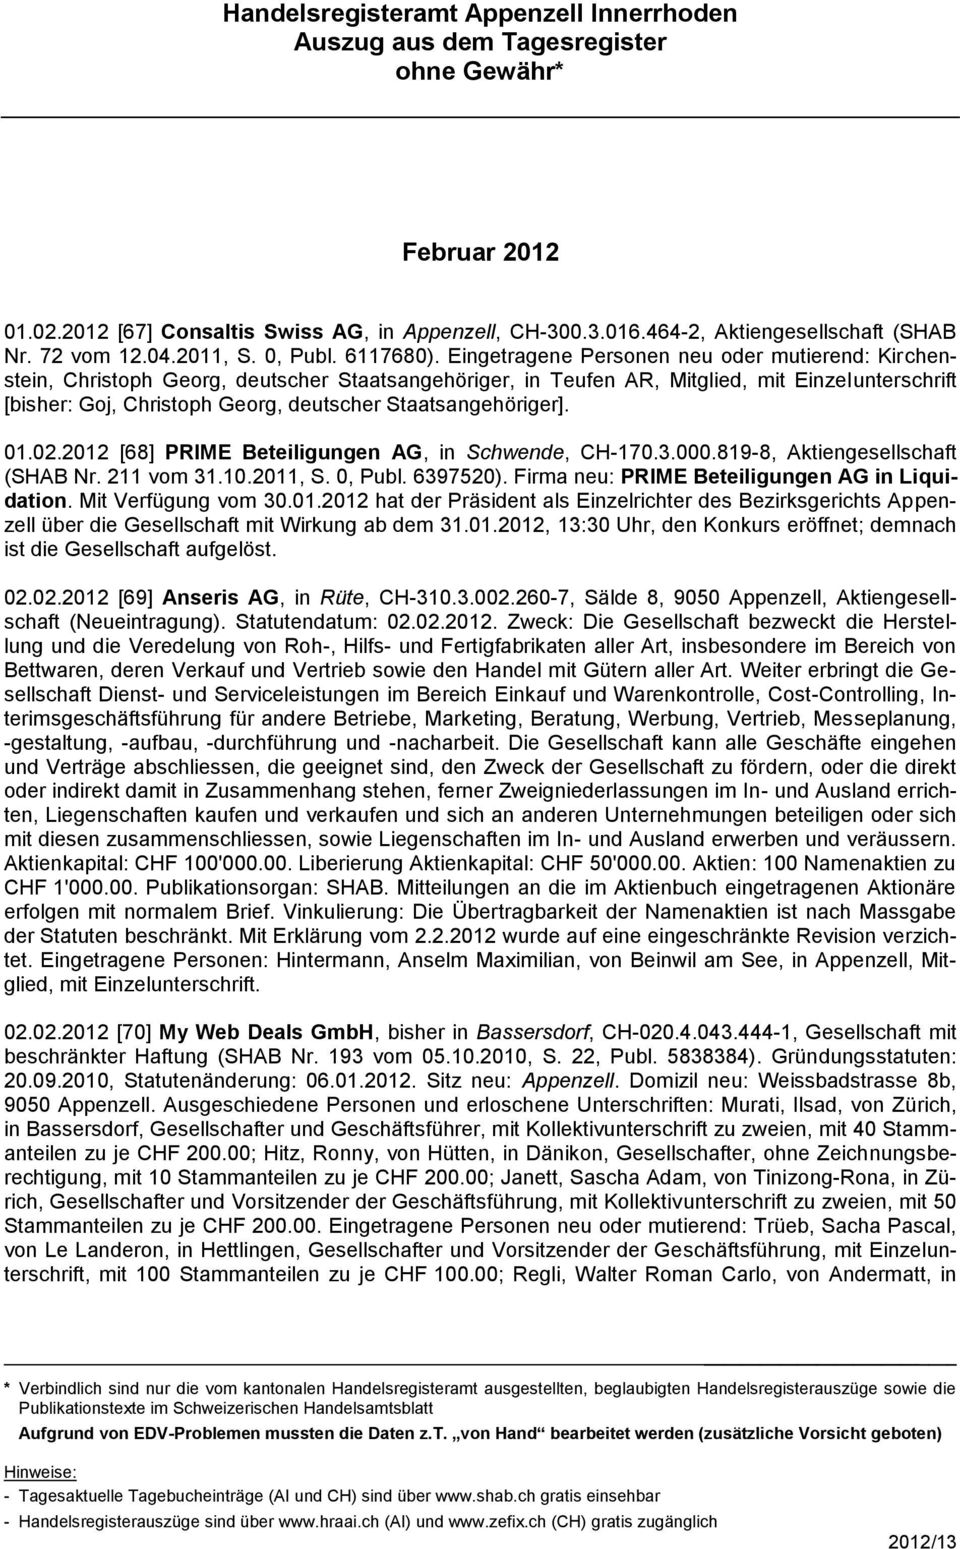 Staatsangehöriger]. 01.02.2012 [68] PRIME Beteiligungen AG, in Schwende, CH-170.3.000.819-8, Aktiengesellschaft (SHAB Nr. 211 vom 31.10.2011, S. 0, Publ. 6397520).